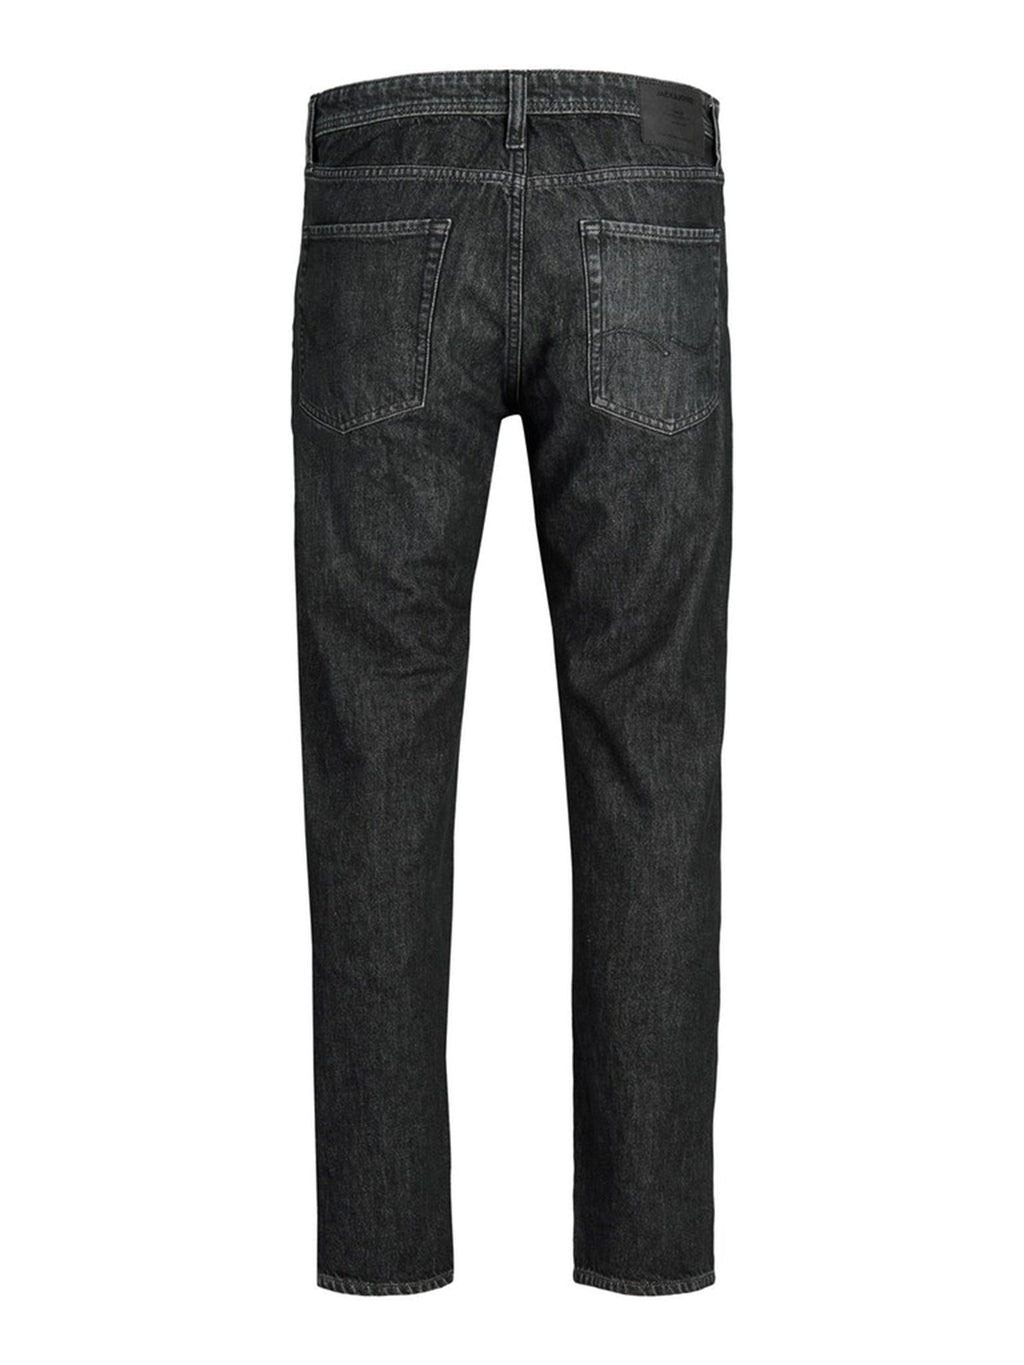 „Chris Original Jeans MF993“ - juodas džinsinis audinys